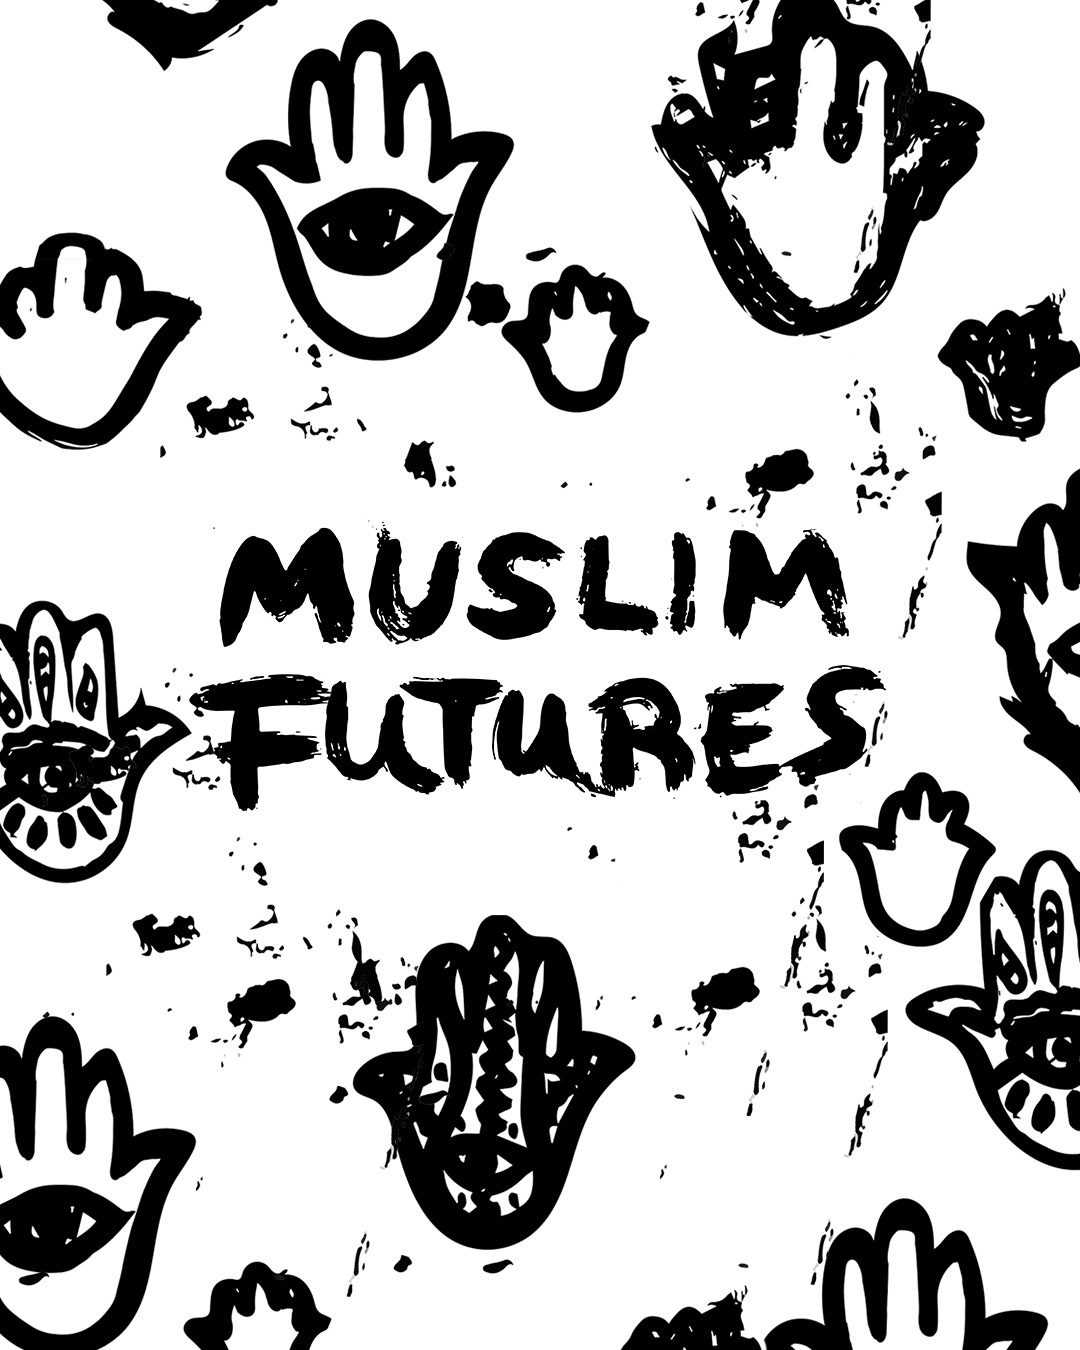 Muslim Futures